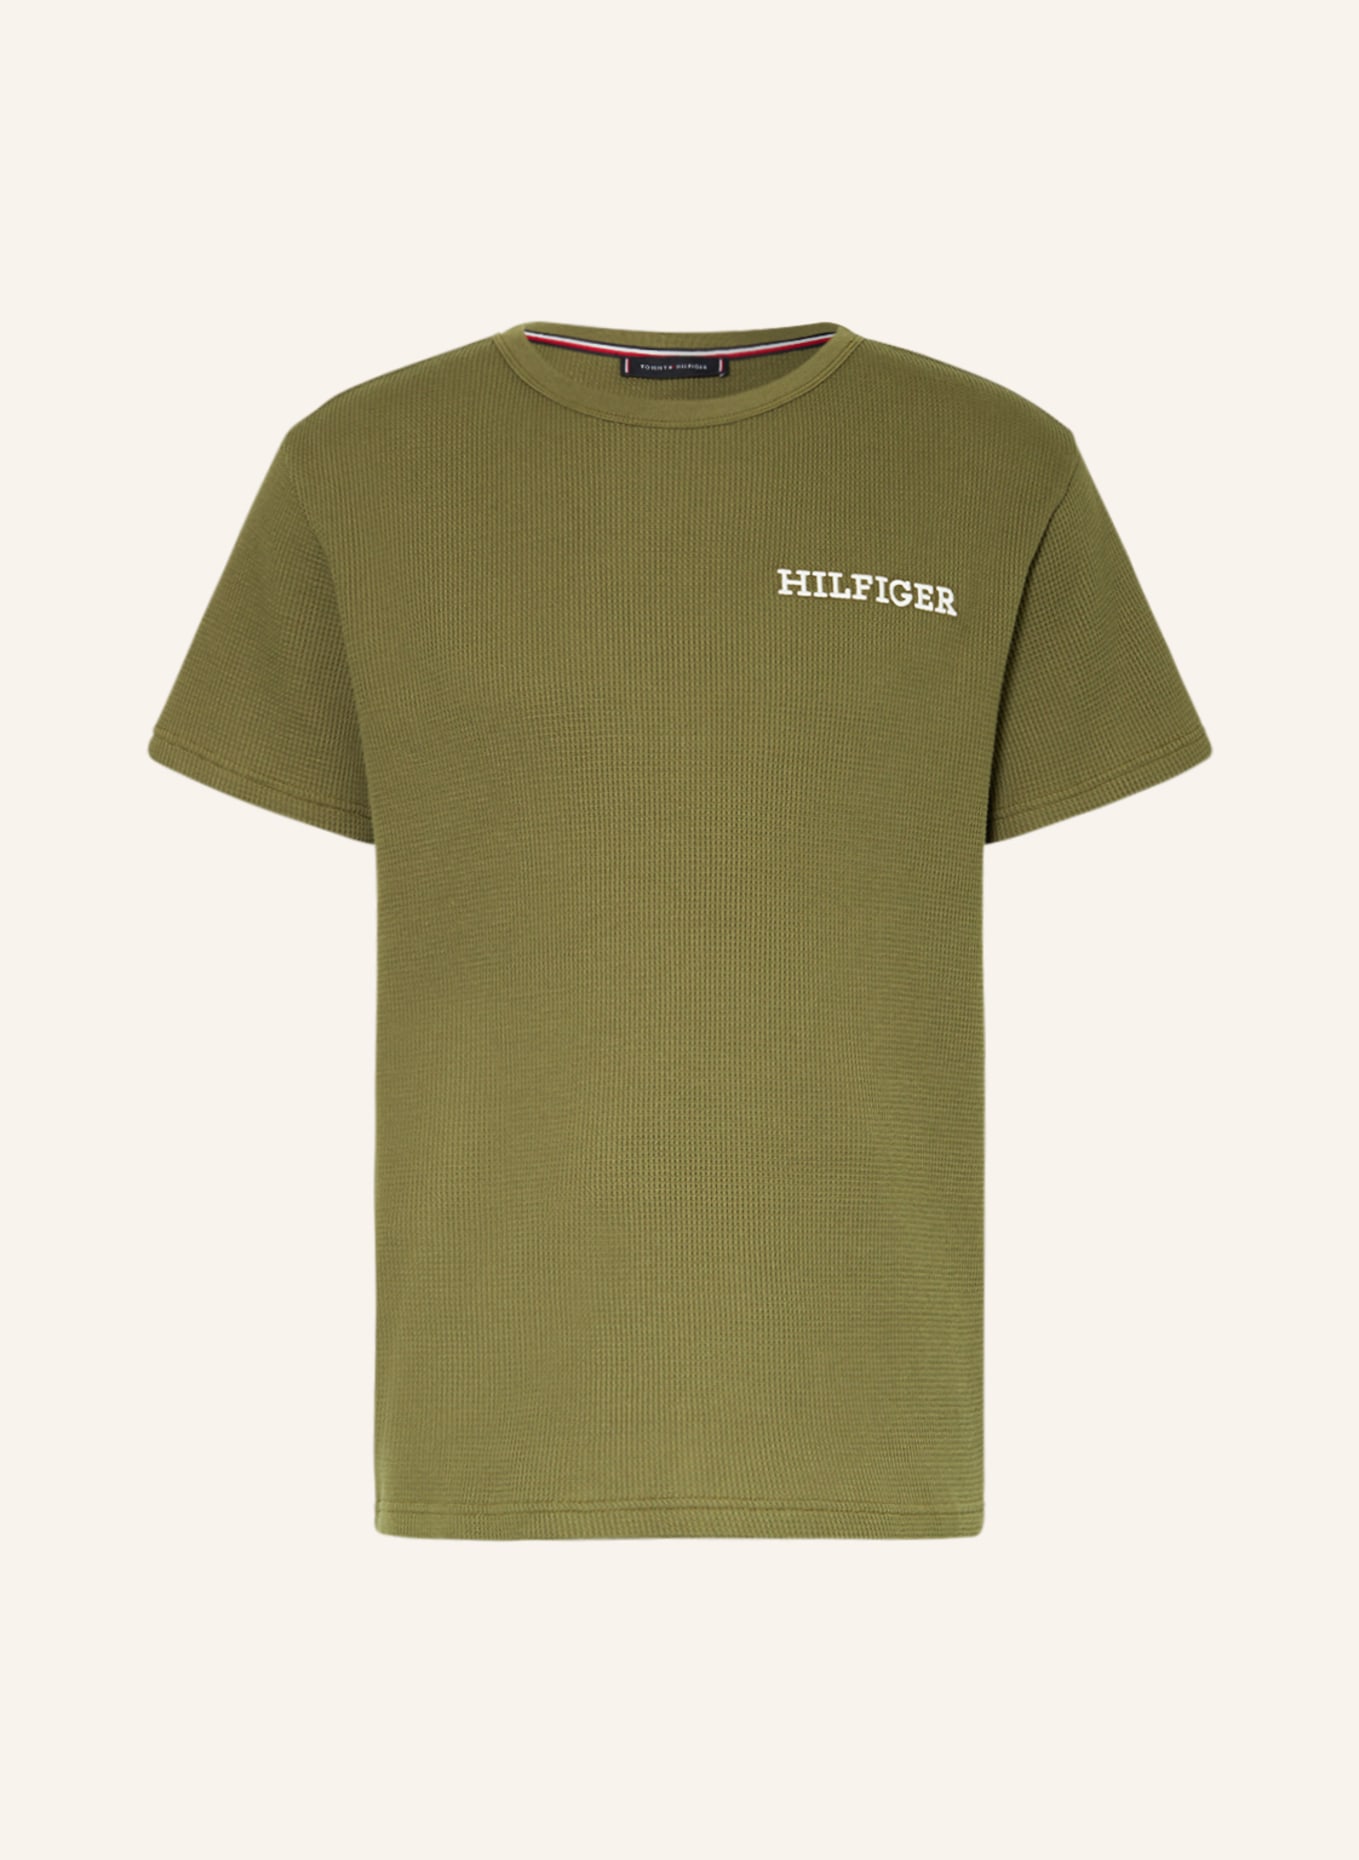 TOMMY HILFIGER Lounge shirt, Color: OLIVE (Image 1)